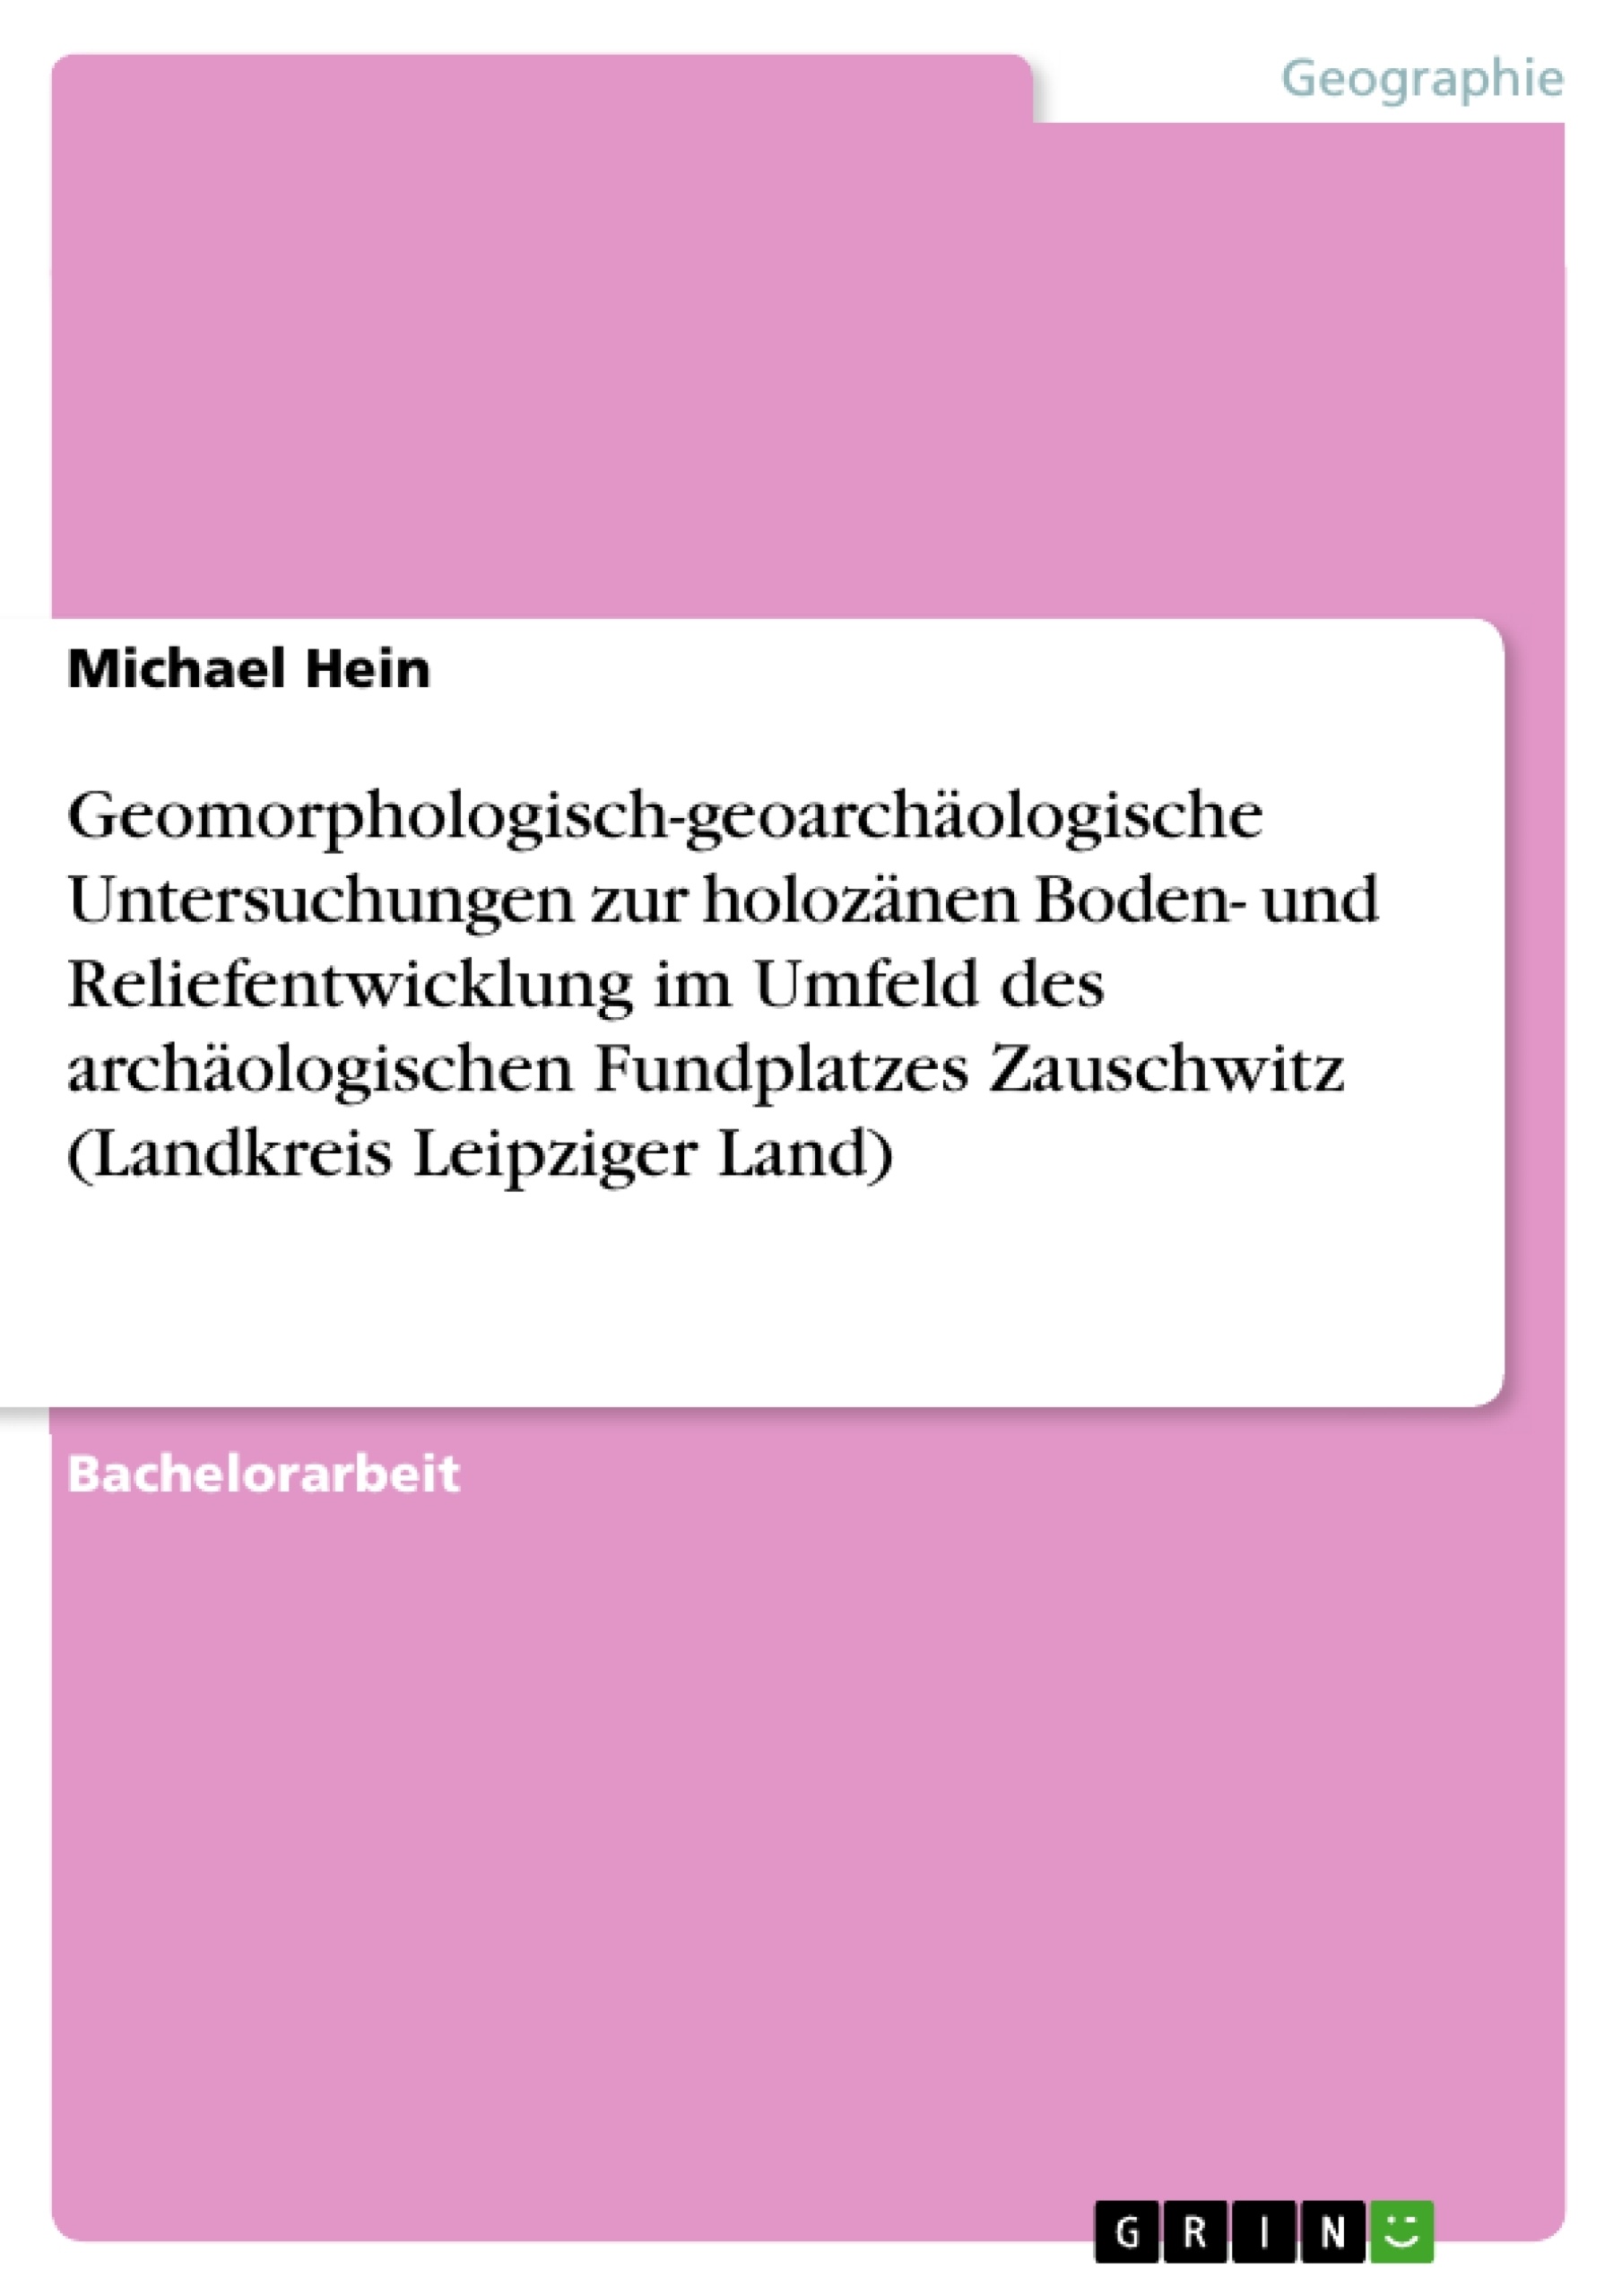 Title: Geomorphologisch-geoarchäologische Untersuchungen zur holozänen Boden- und Reliefentwicklung im Umfeld des archäologischen Fundplatzes Zauschwitz (Landkreis Leipziger Land)